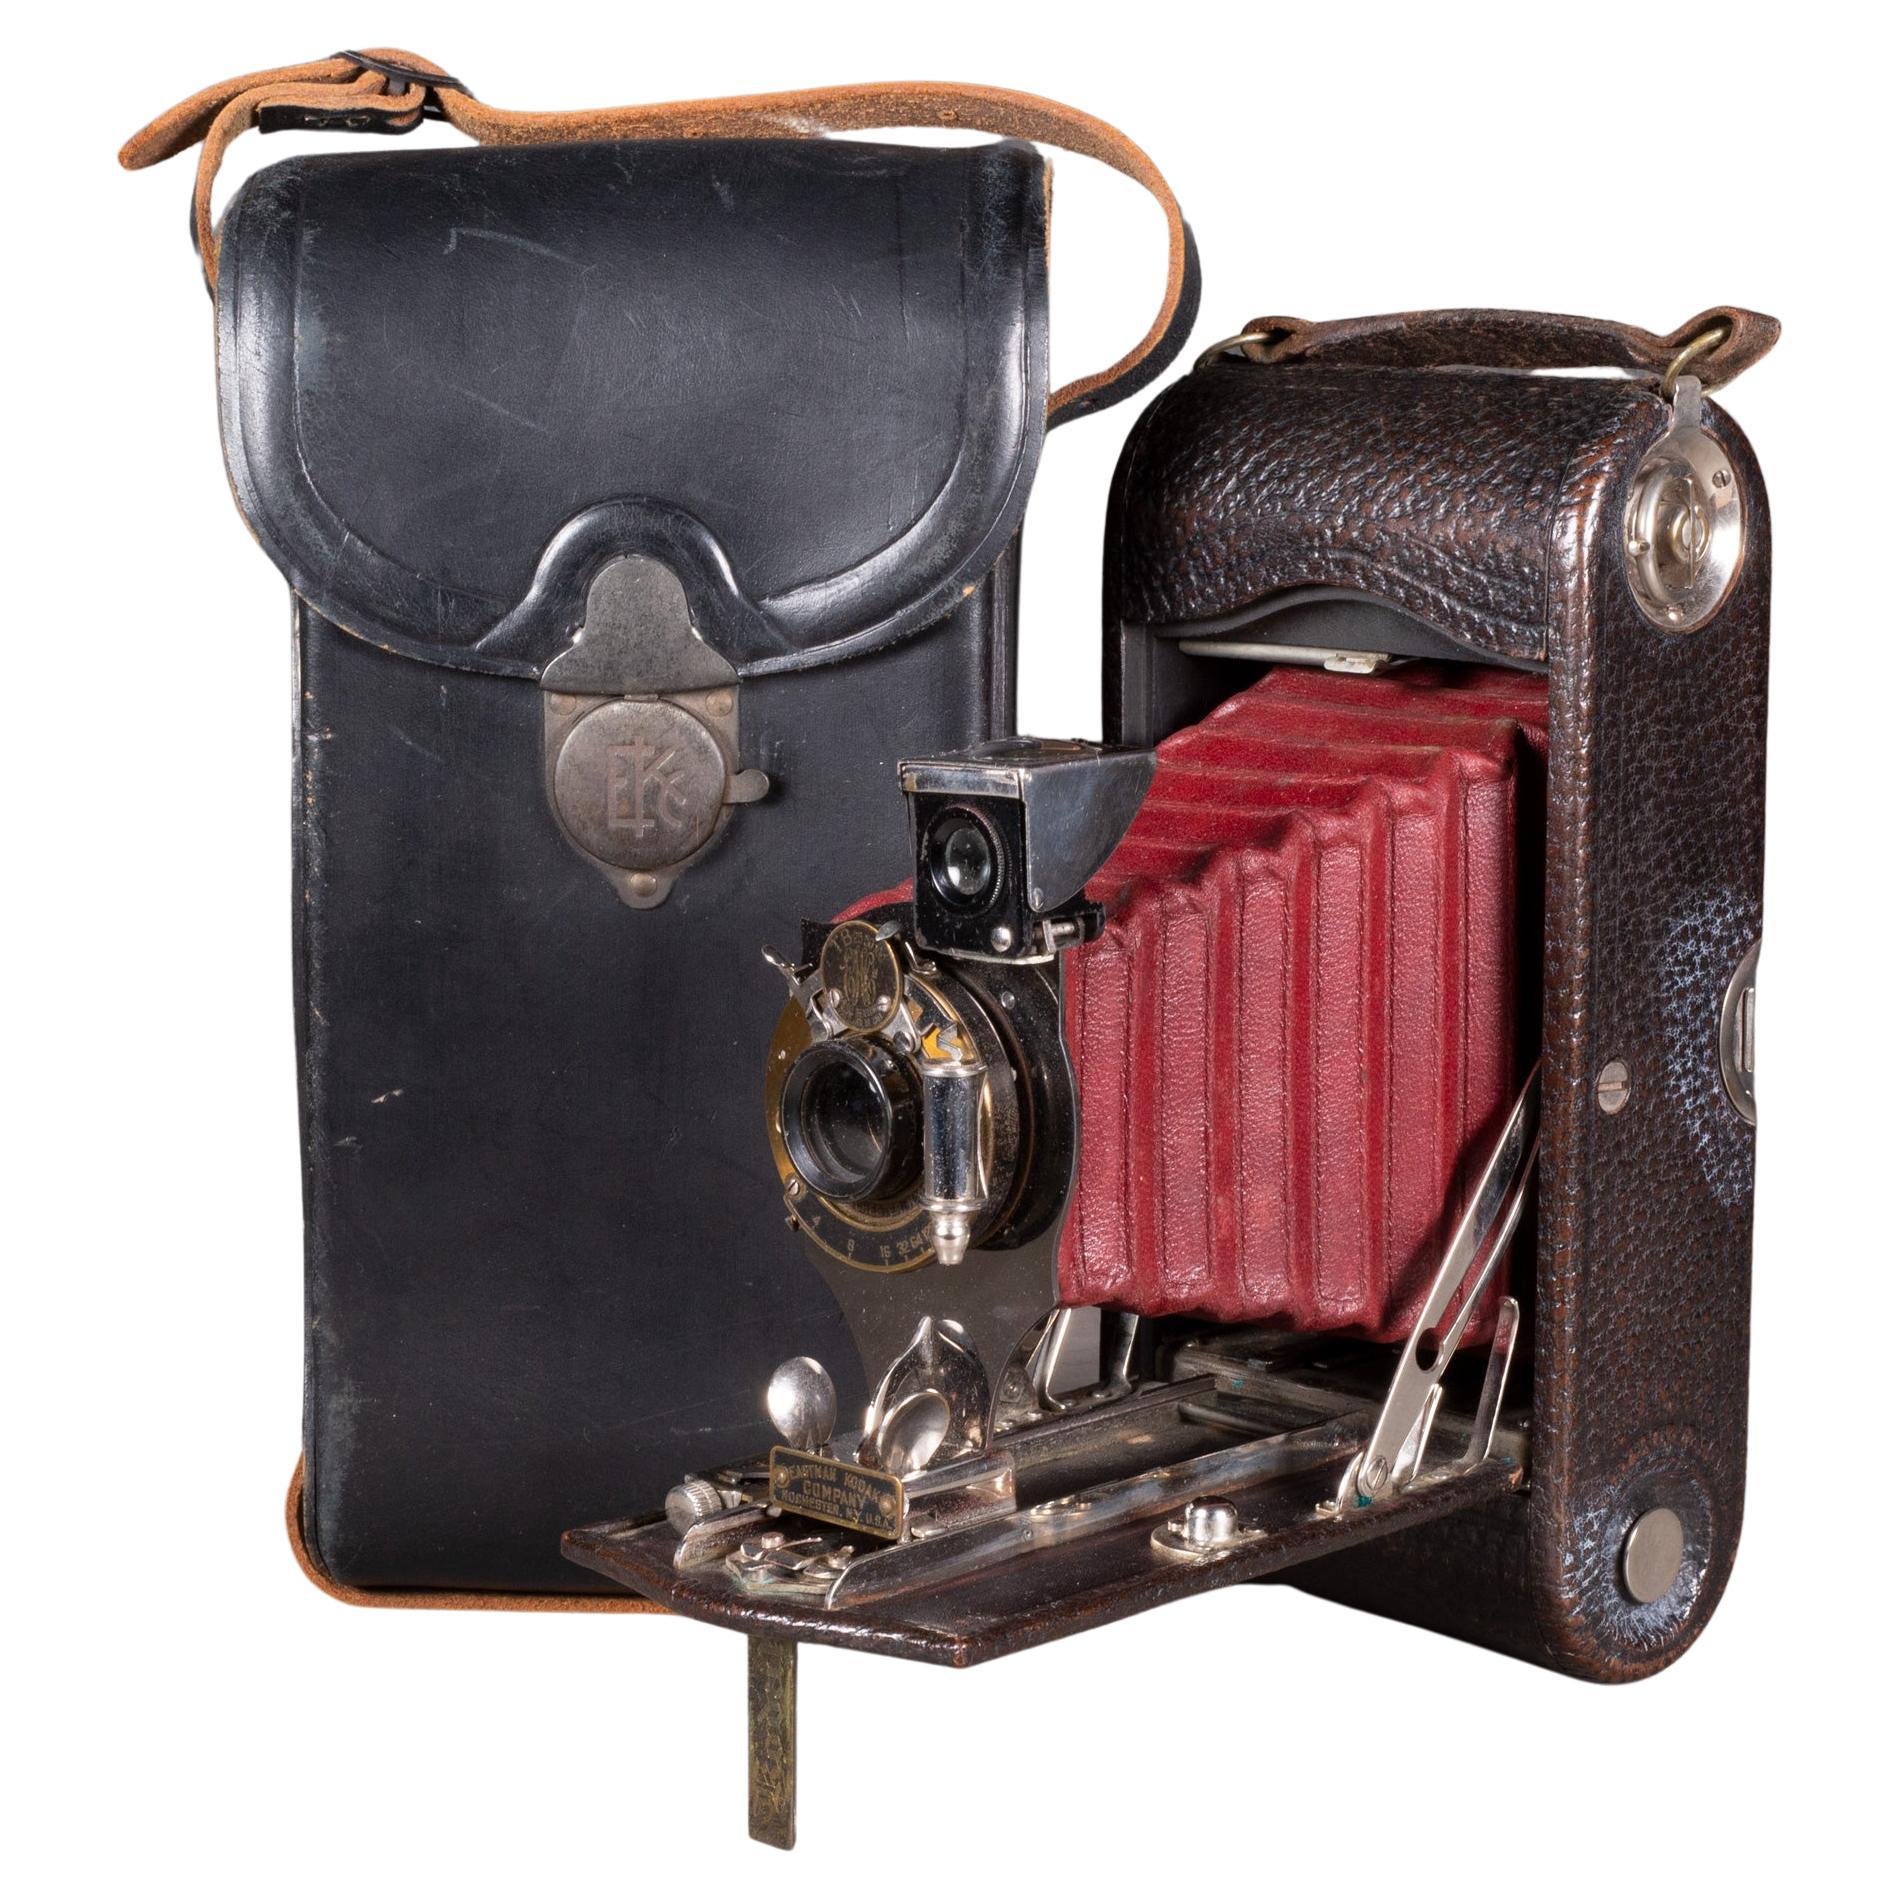 Large Kodak No. 2C Folding Pocket Camera/Leather Case c.1914 (FREE SHIPPING)